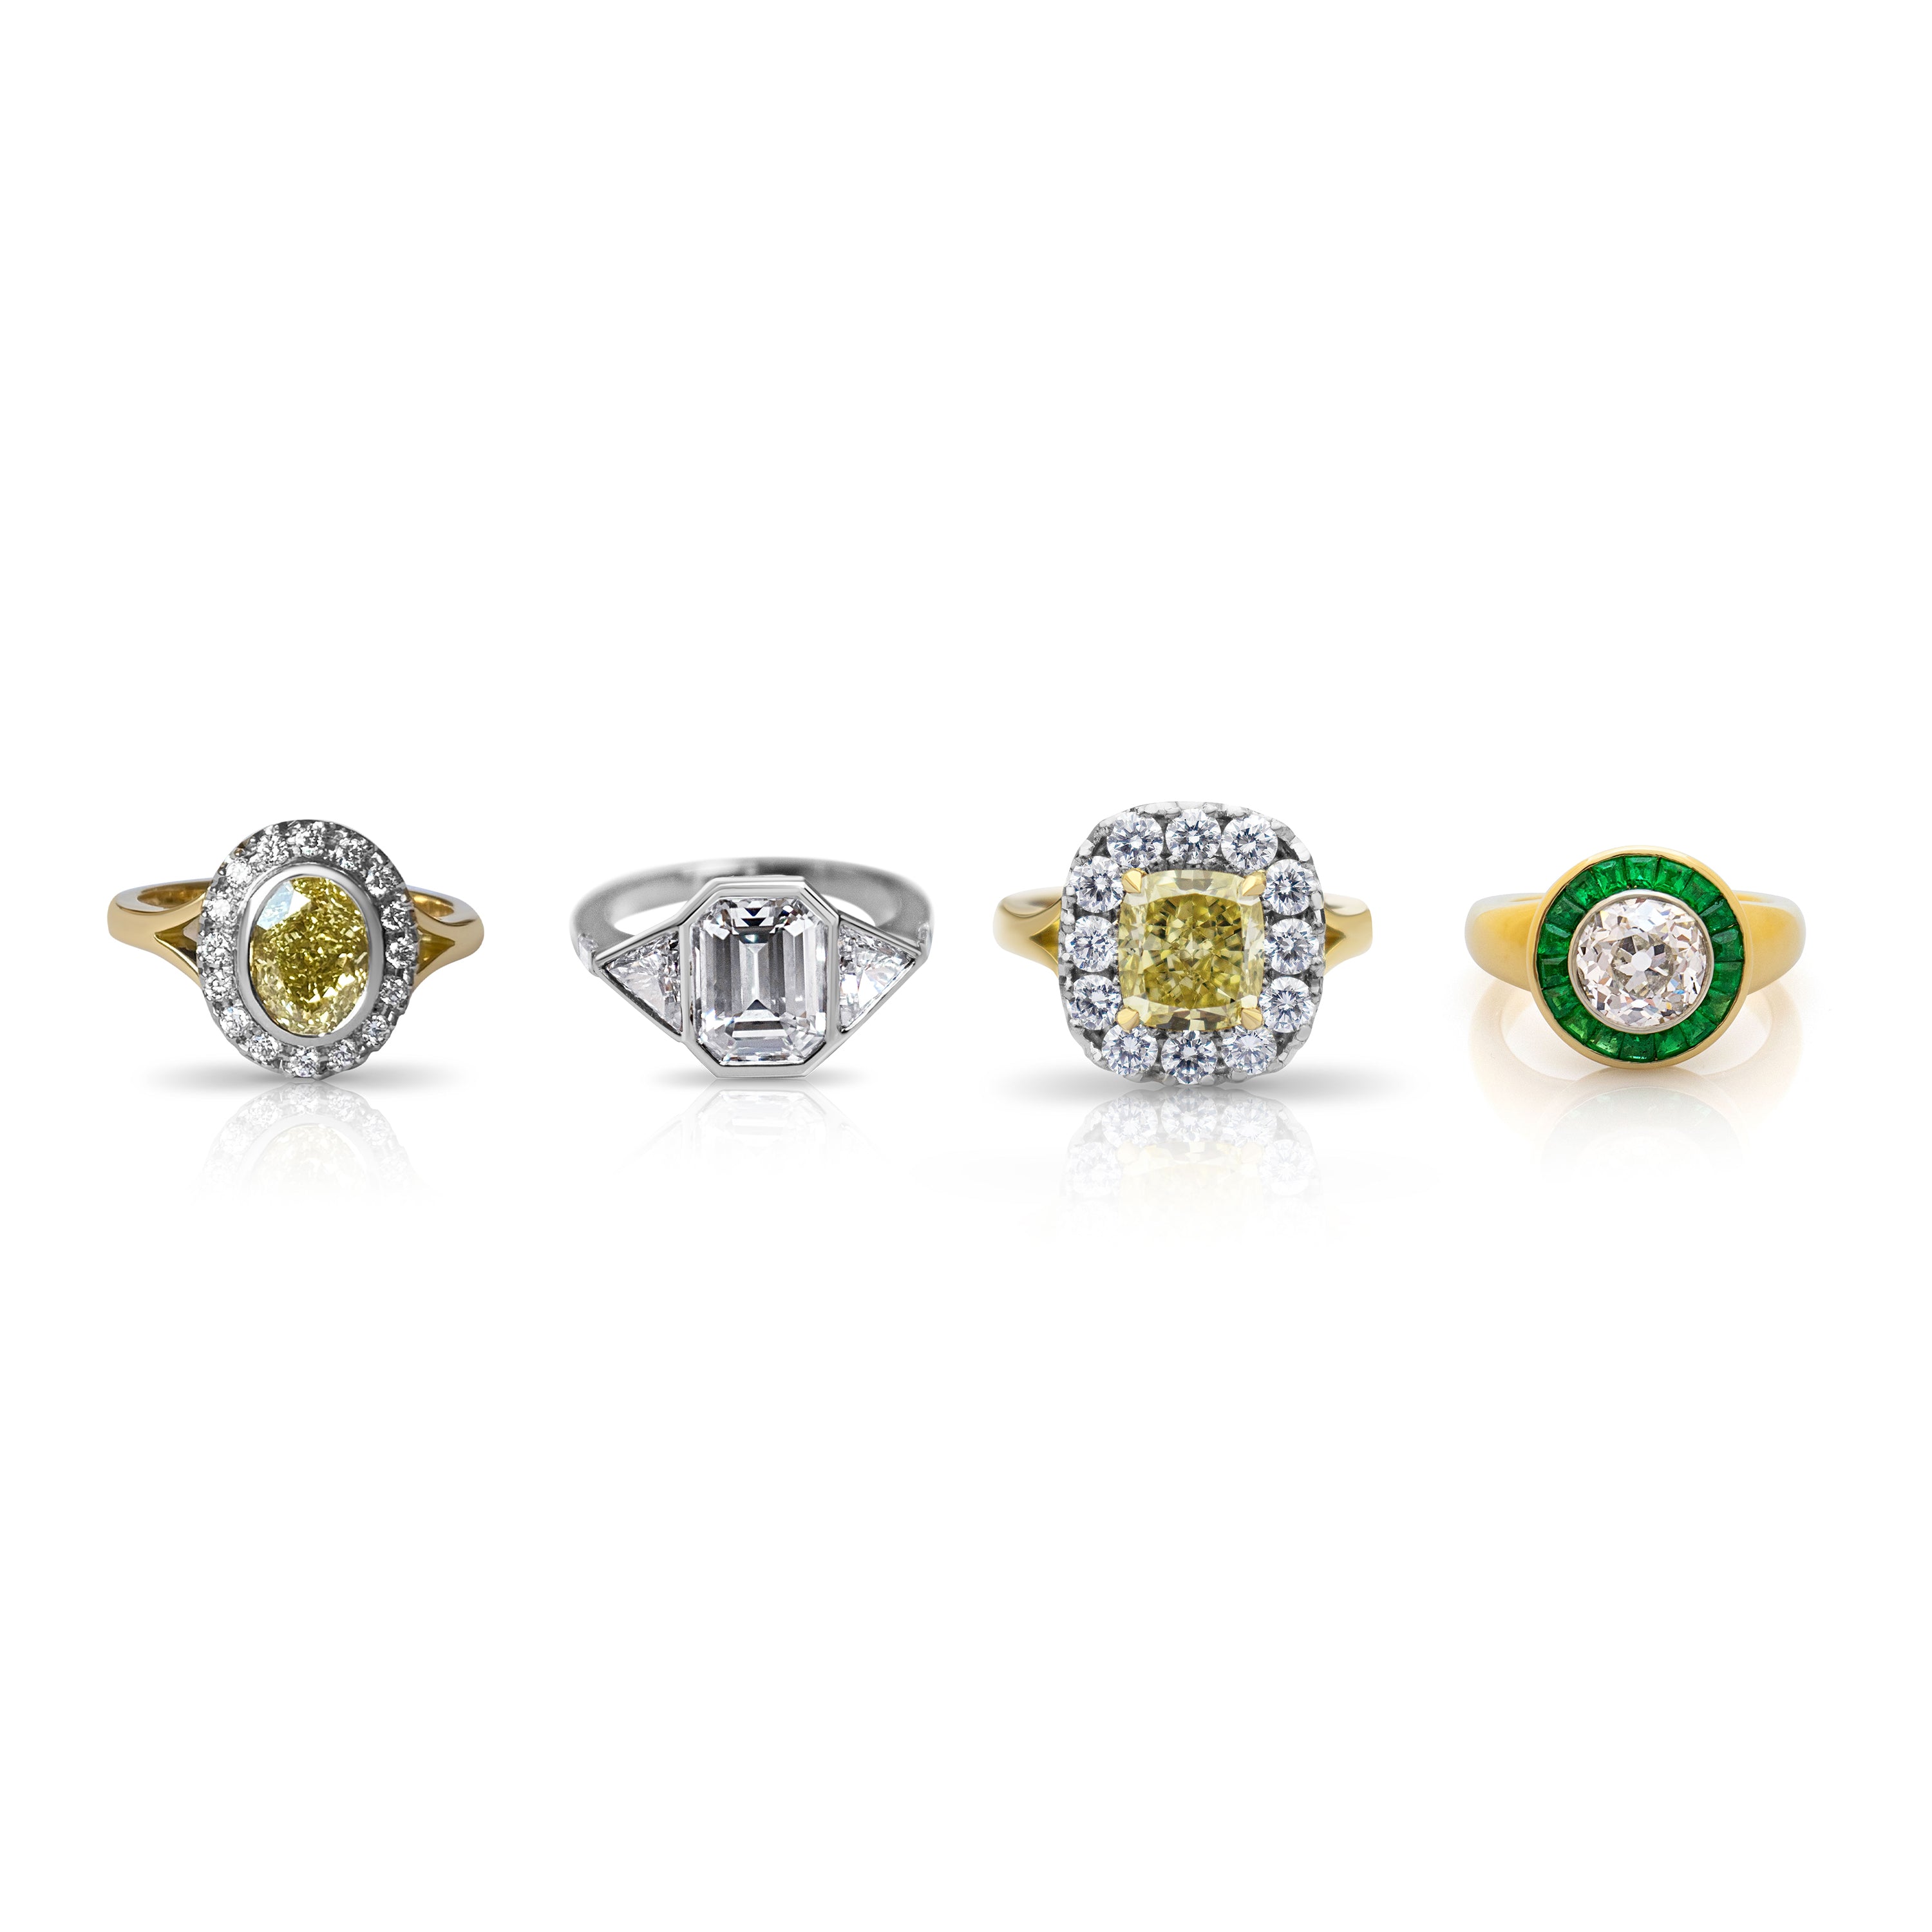 Aquamarine and diamond engagement ring. Bespoke engagement. 